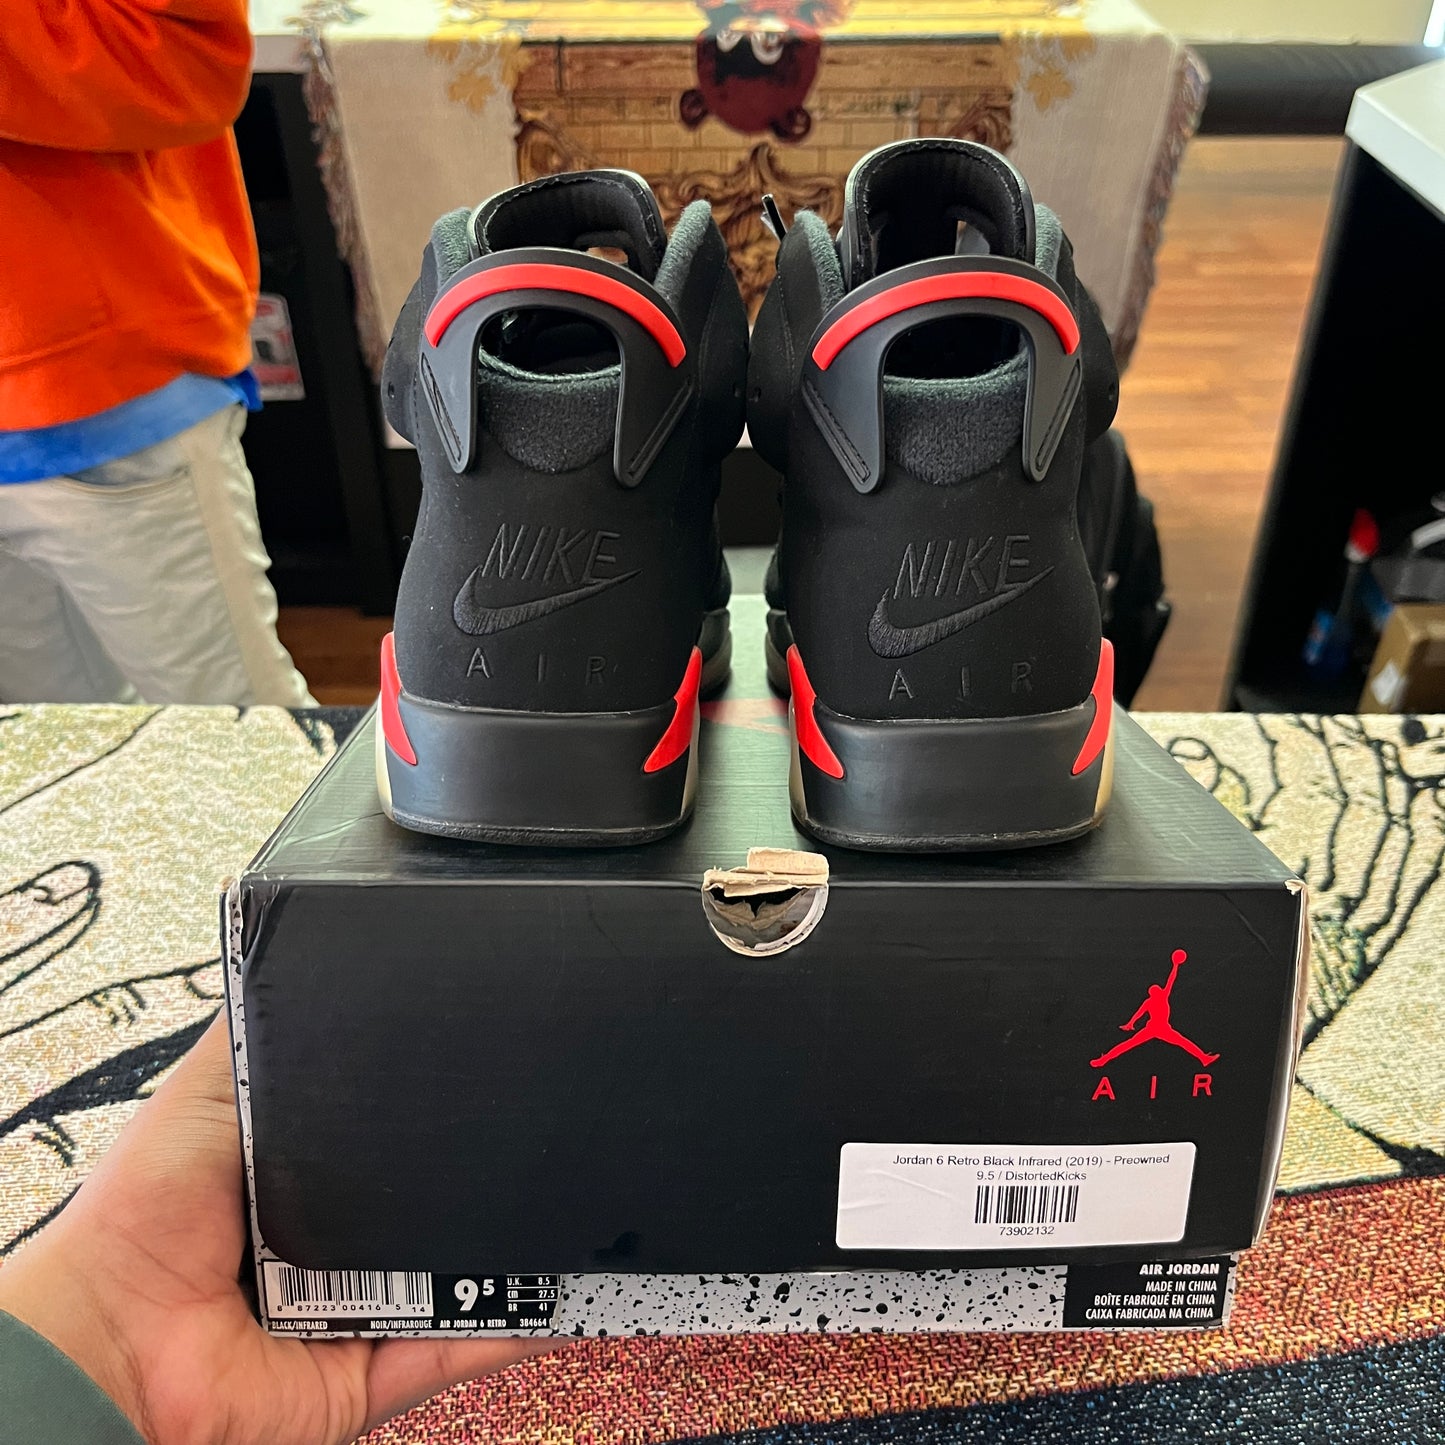 Jordan 6 Retro Black Infrared (2019) - Preloved